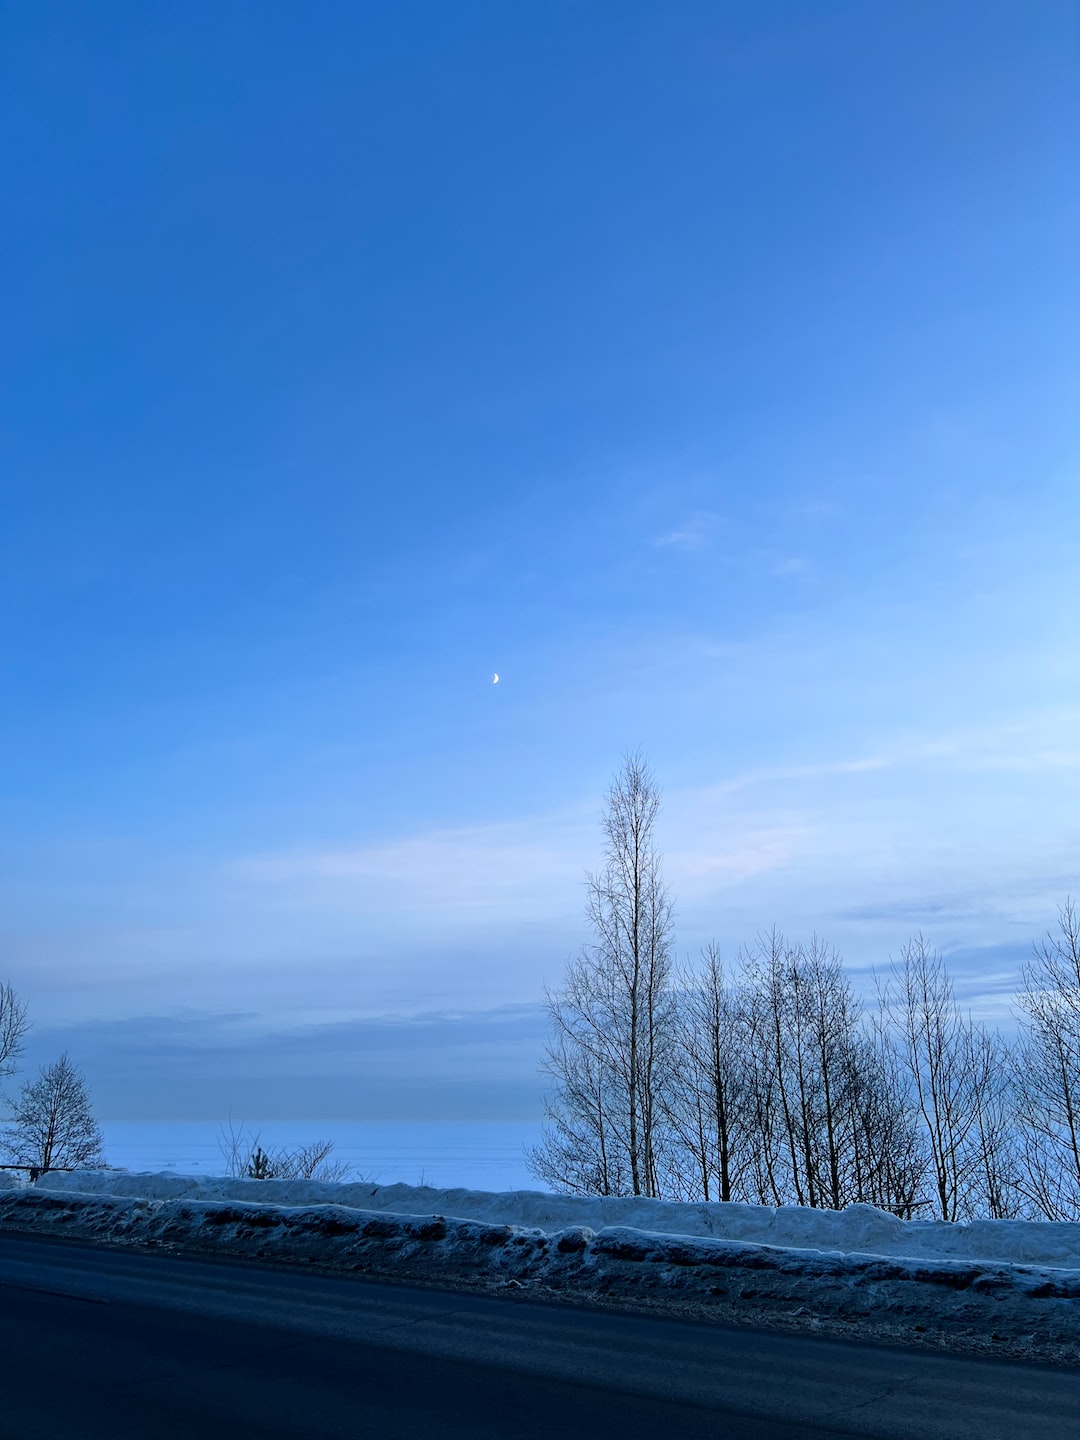 Winter Road, Seascape, Moon